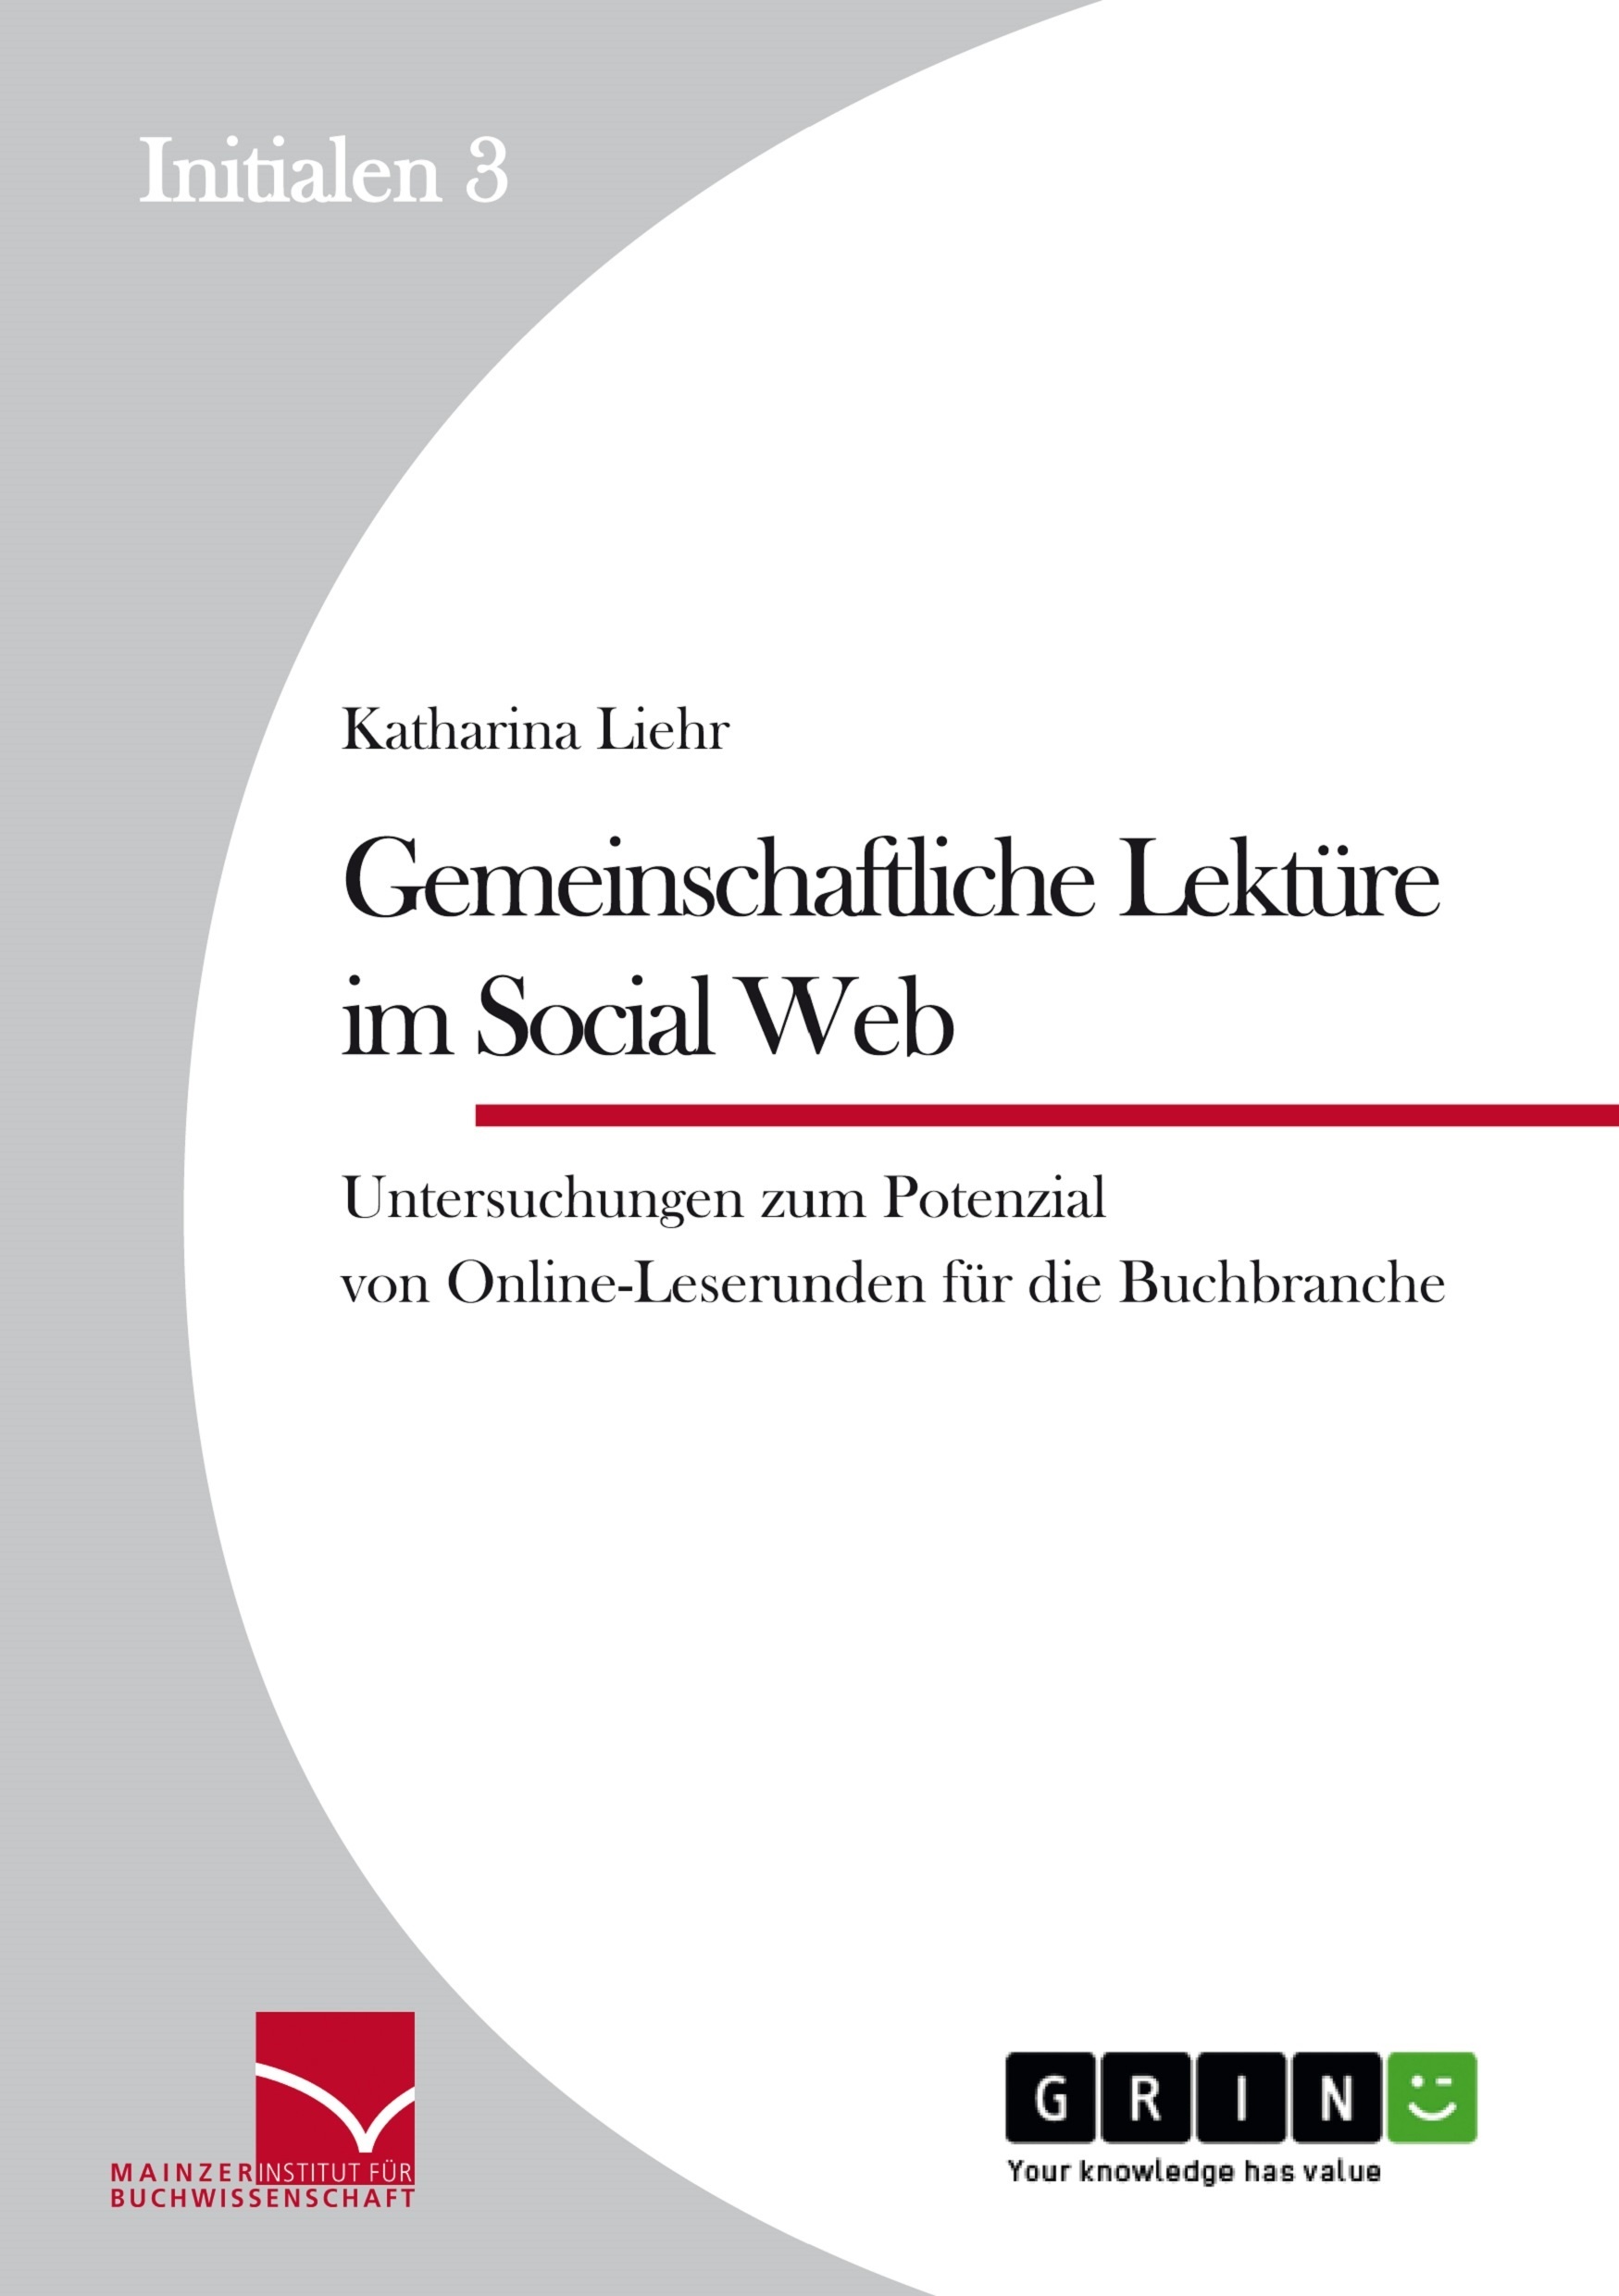 Title: Gemeinschaftliche Lektüre im Social Web